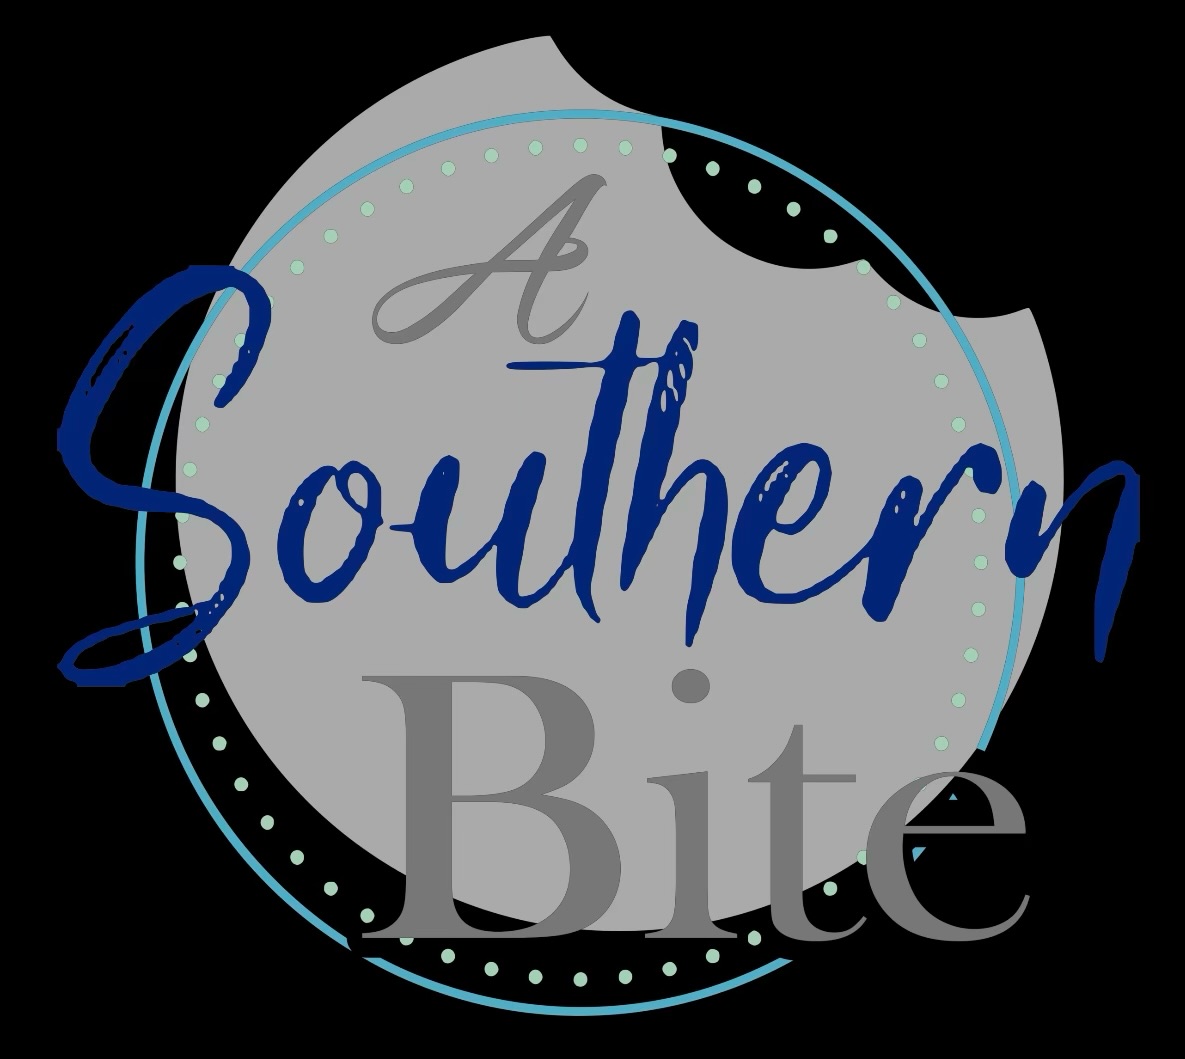 A Southern Bite